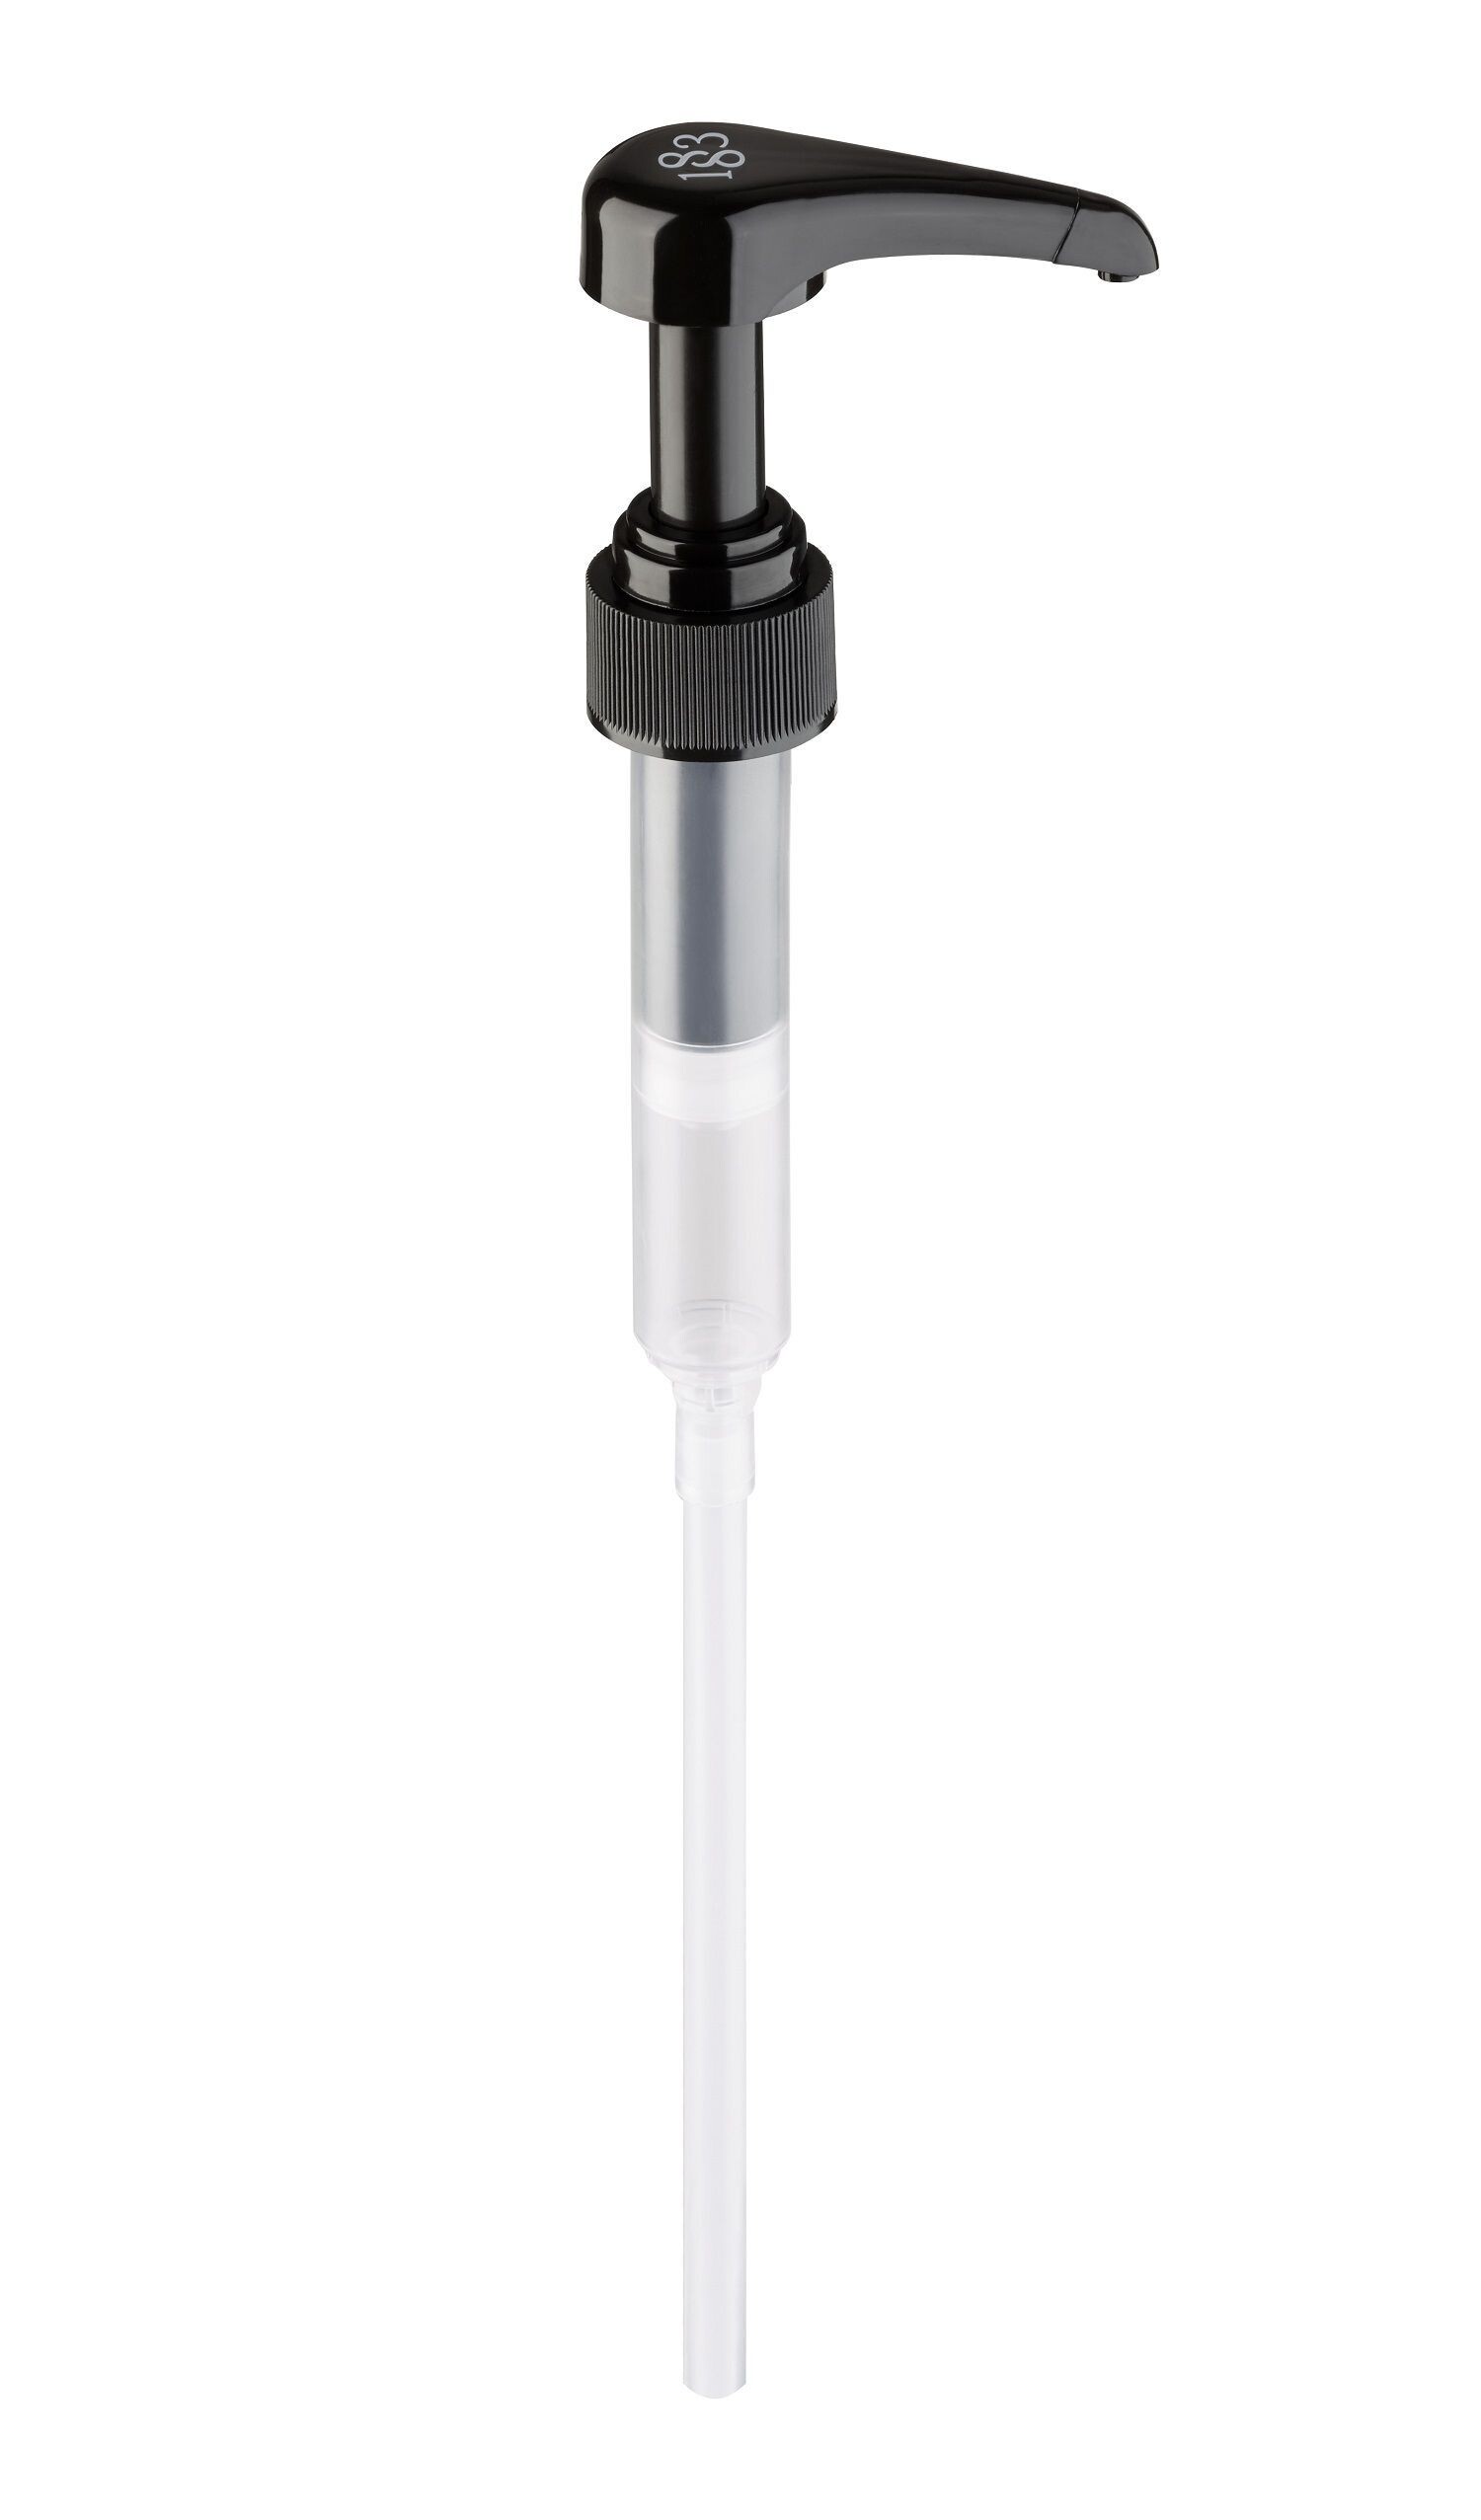 Dispenser Pump 8ml for Routin syrop for 1Liter bottle